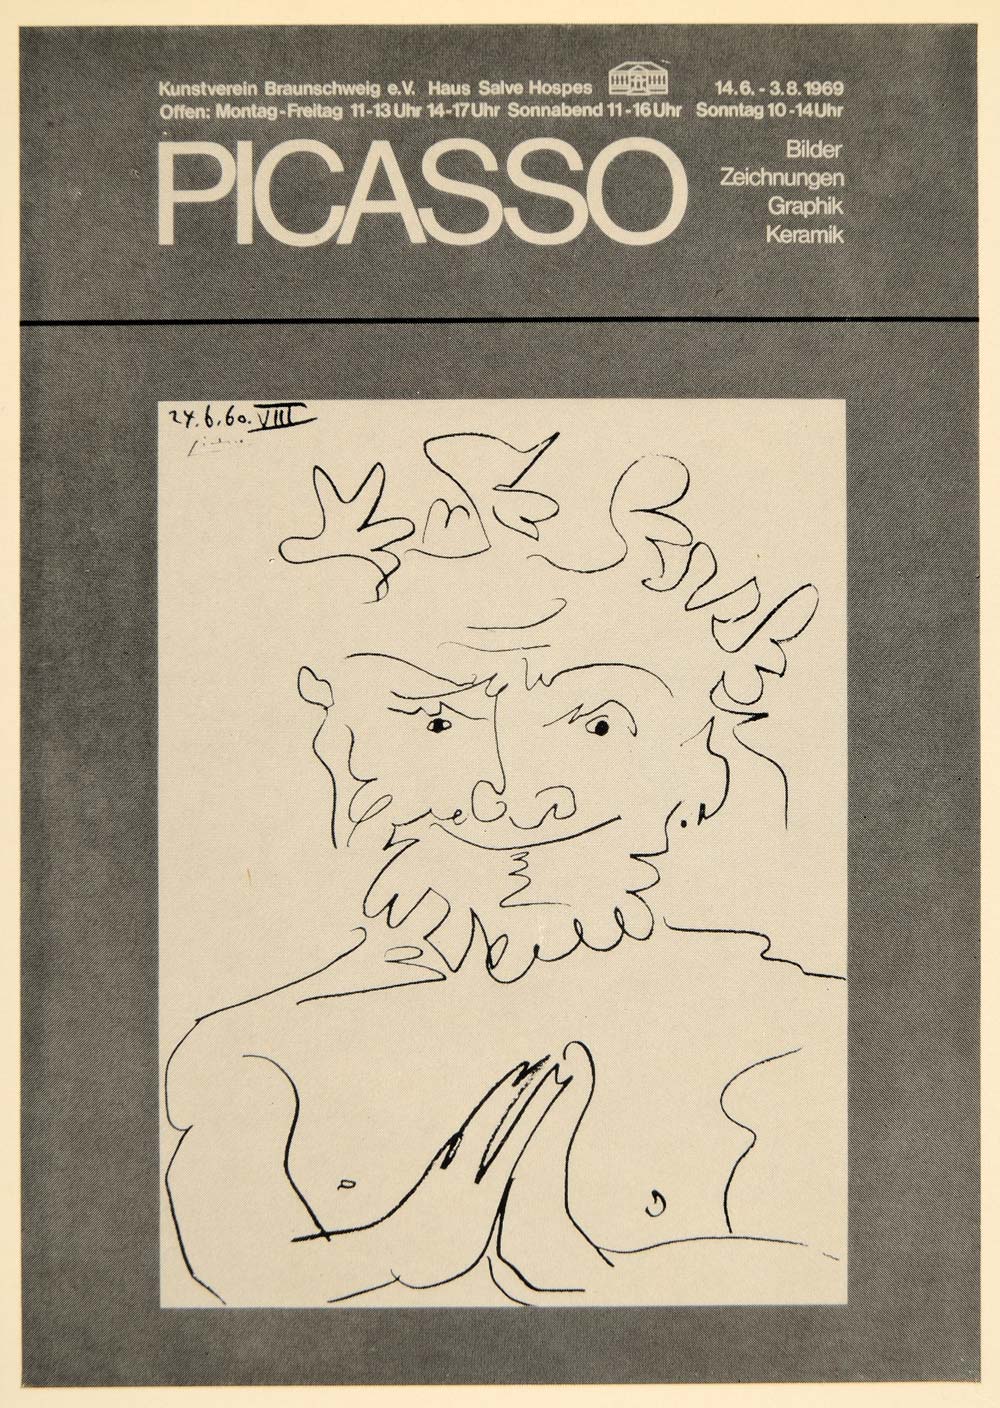 1971 Print Picasso Kunstverein Braunschweig Poster 1969 - ORIGINAL PIC3